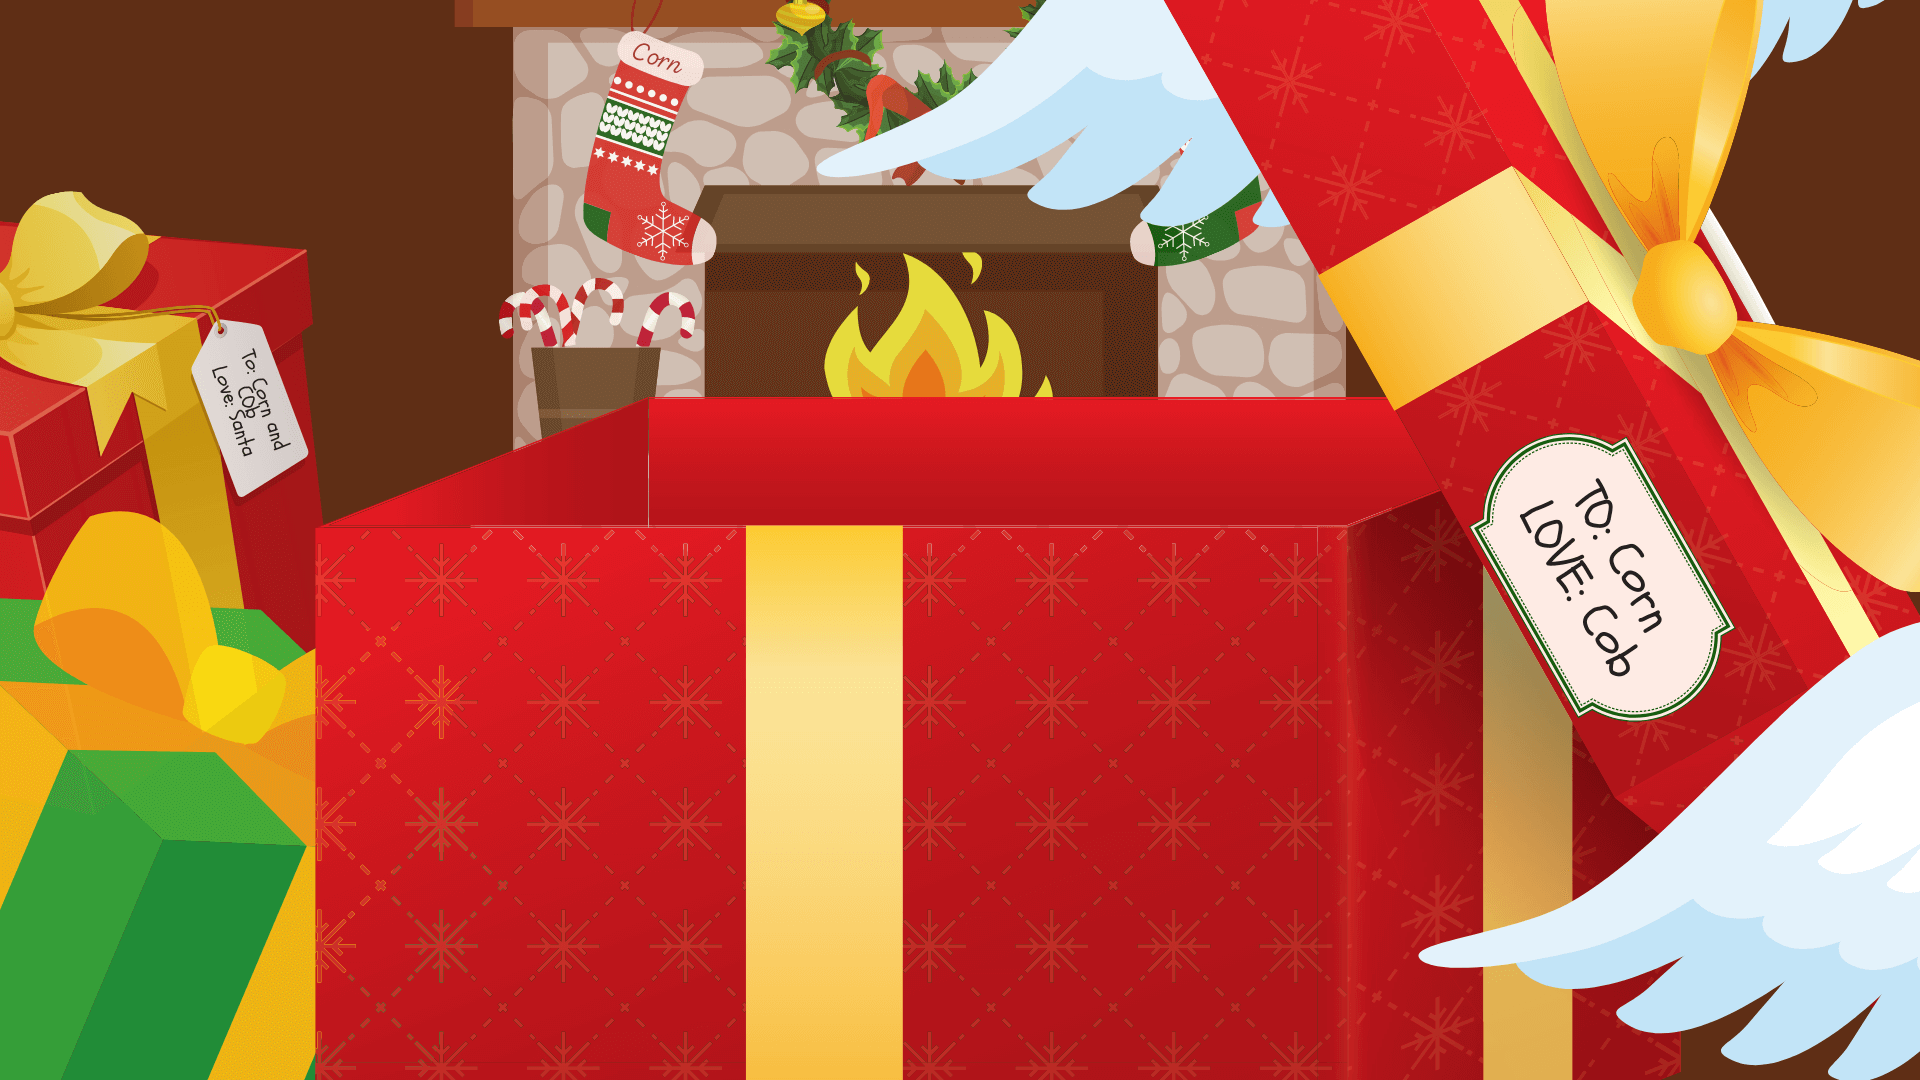 Để tạo ra không khí lễ hội trên Zoom, phông nền ảo giống thịt gà tây cho Zoom Giáng sinh là một lựa chọn tuyệt vời. Với những hình ảnh đầy màu sắc và mang đến cảm giác ấm cúng, bạn sẽ cảm thấy như đang ở trong một bữa tiệc thịt gà tây truyền thống của Mỹ.